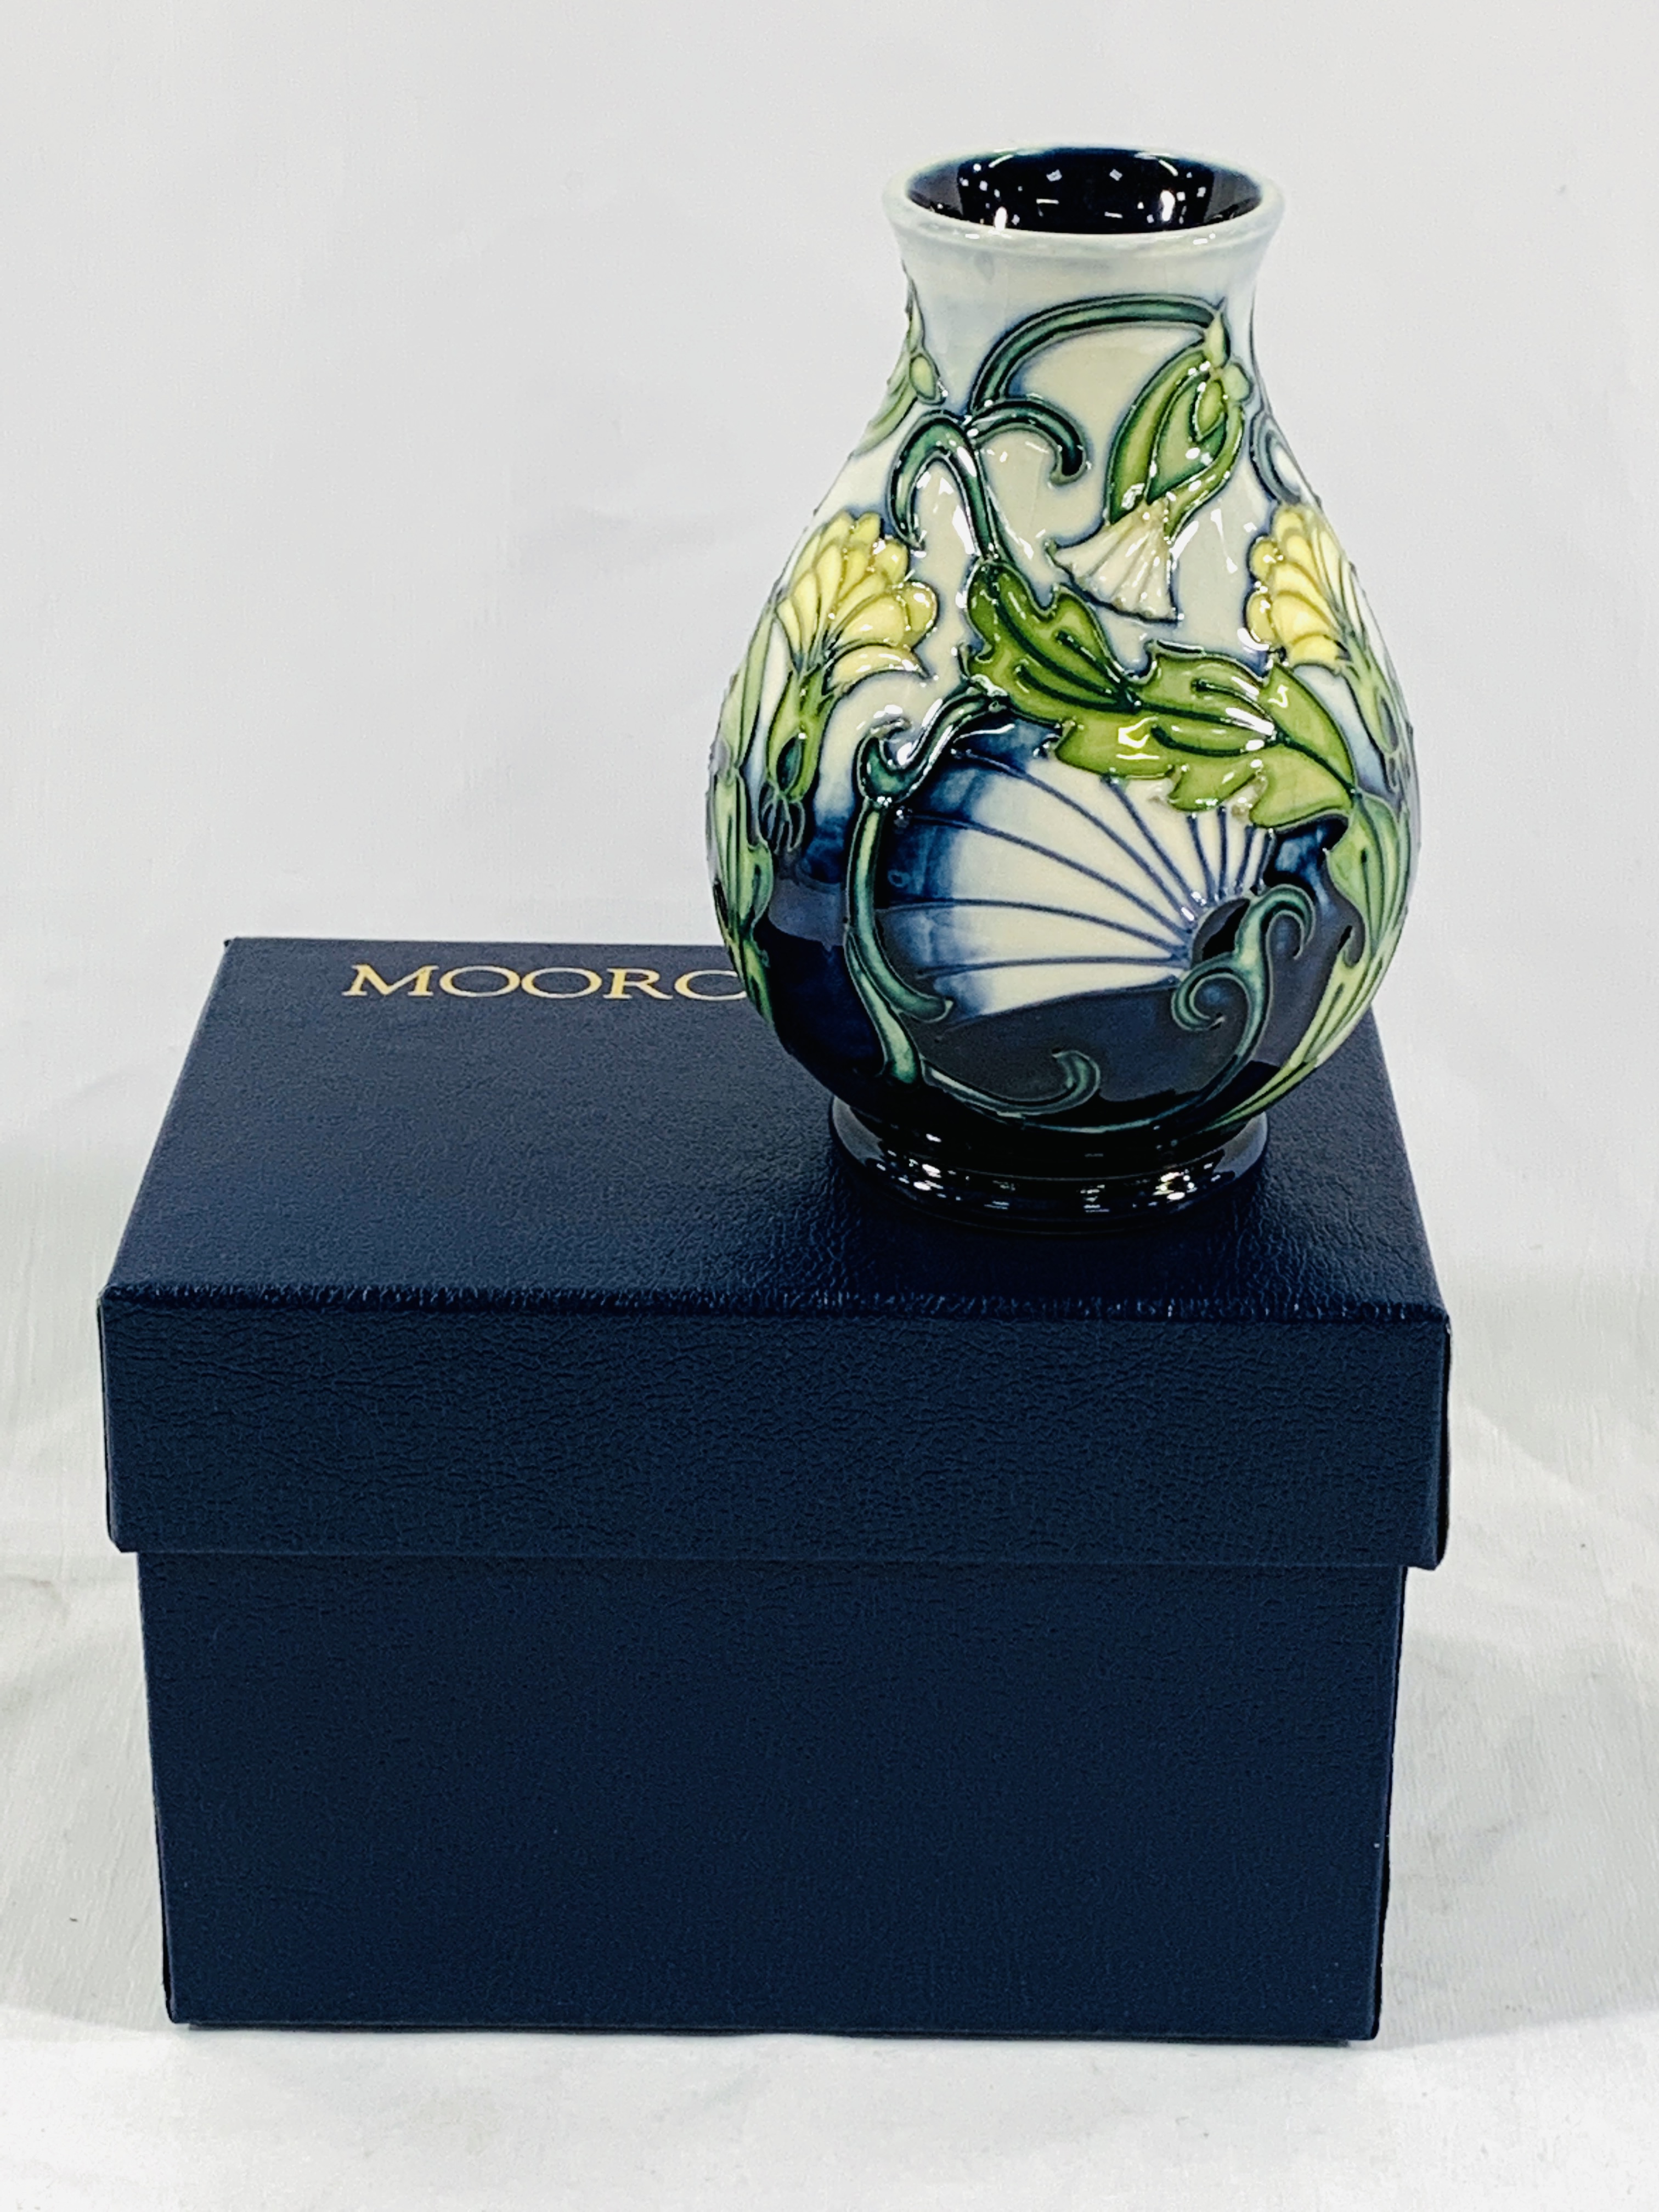 Boxed Moorcroft vase - Image 3 of 4